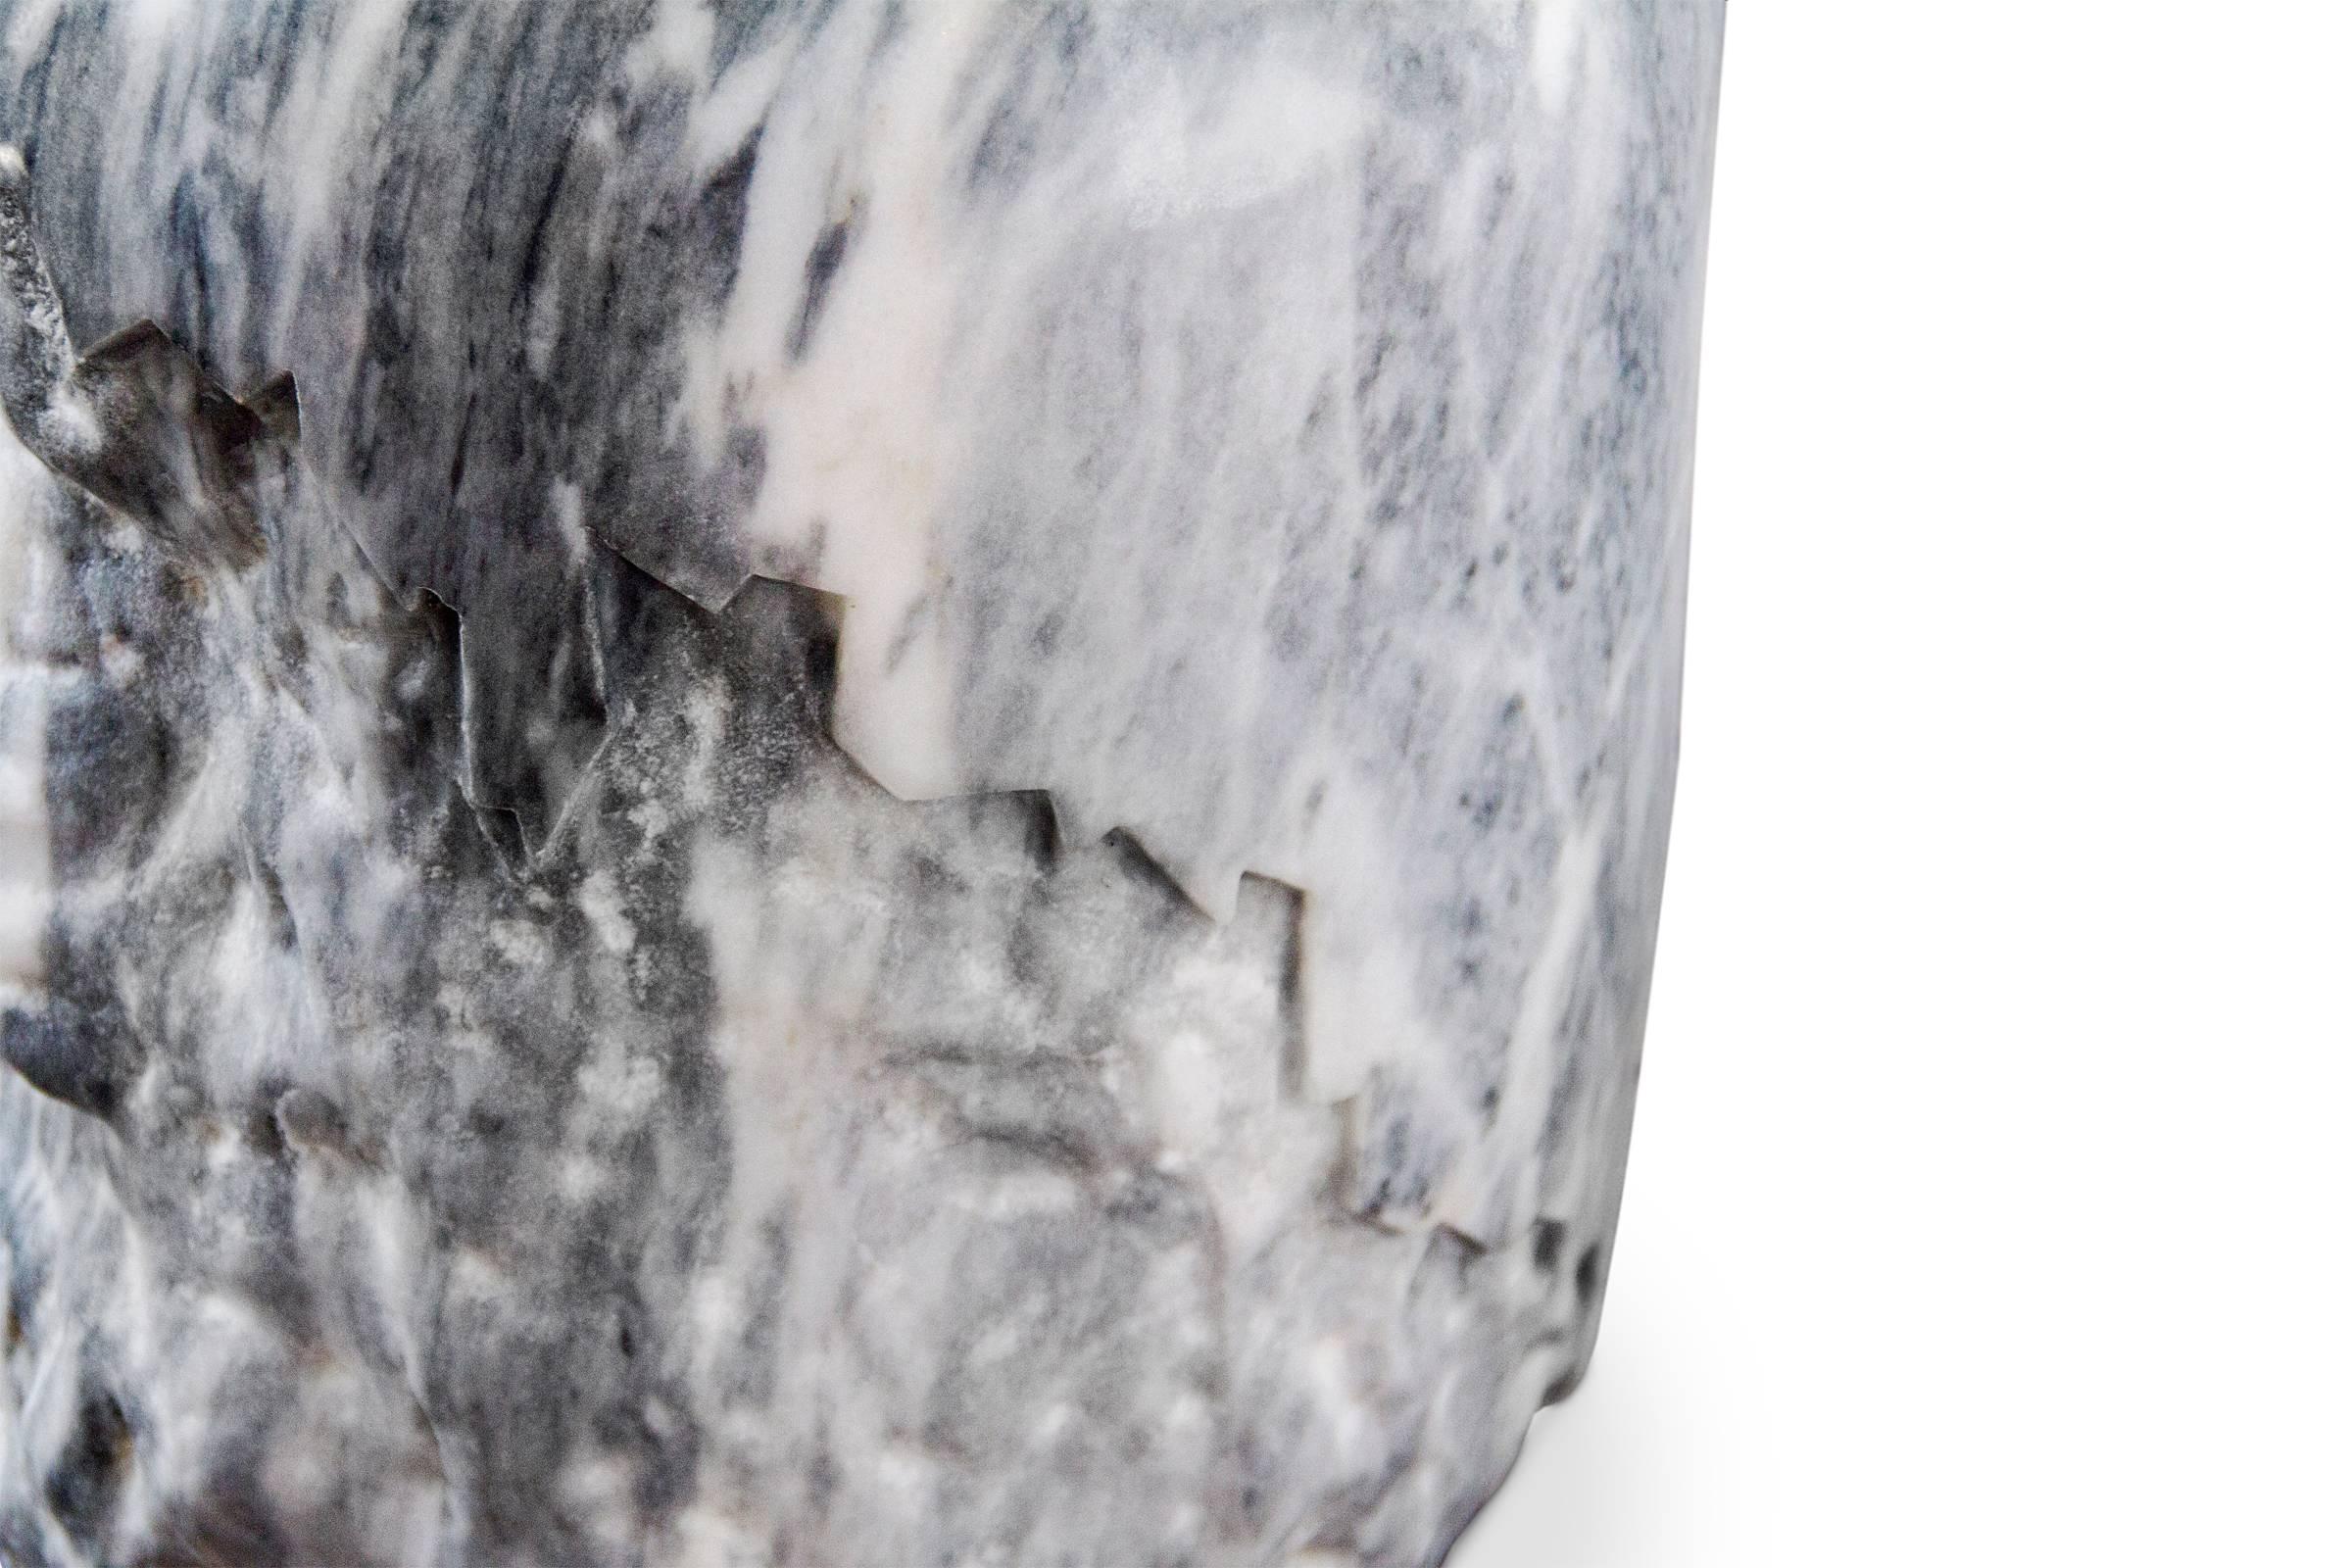 Hocker Marmor in echtem Carrara-Marmor gearbeitet,
handgeschnitzt mit einer stilisierten Linie. Jedes Stück
ist einzigartig und außergewöhnlich. Erhältlich in weiß 
marmor oder grauer Marmor, bitte genaue Ausführung
zum Zeitpunkt Ihrer